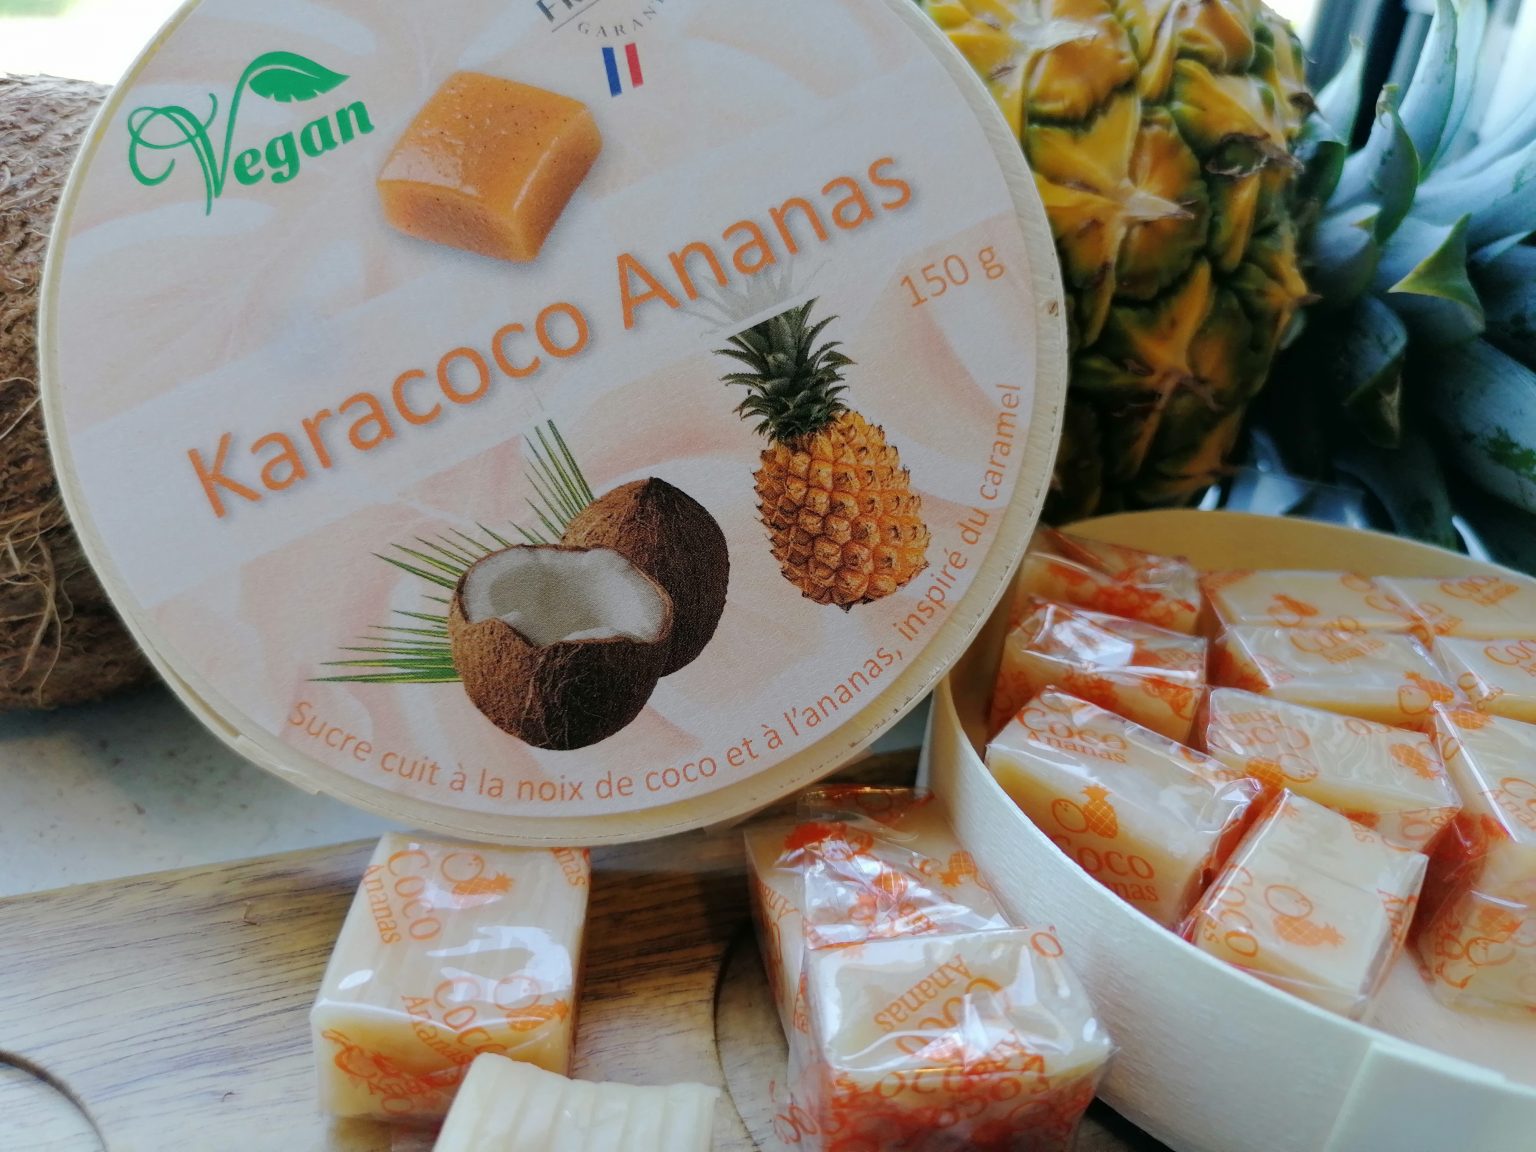 Karacoco Ananas